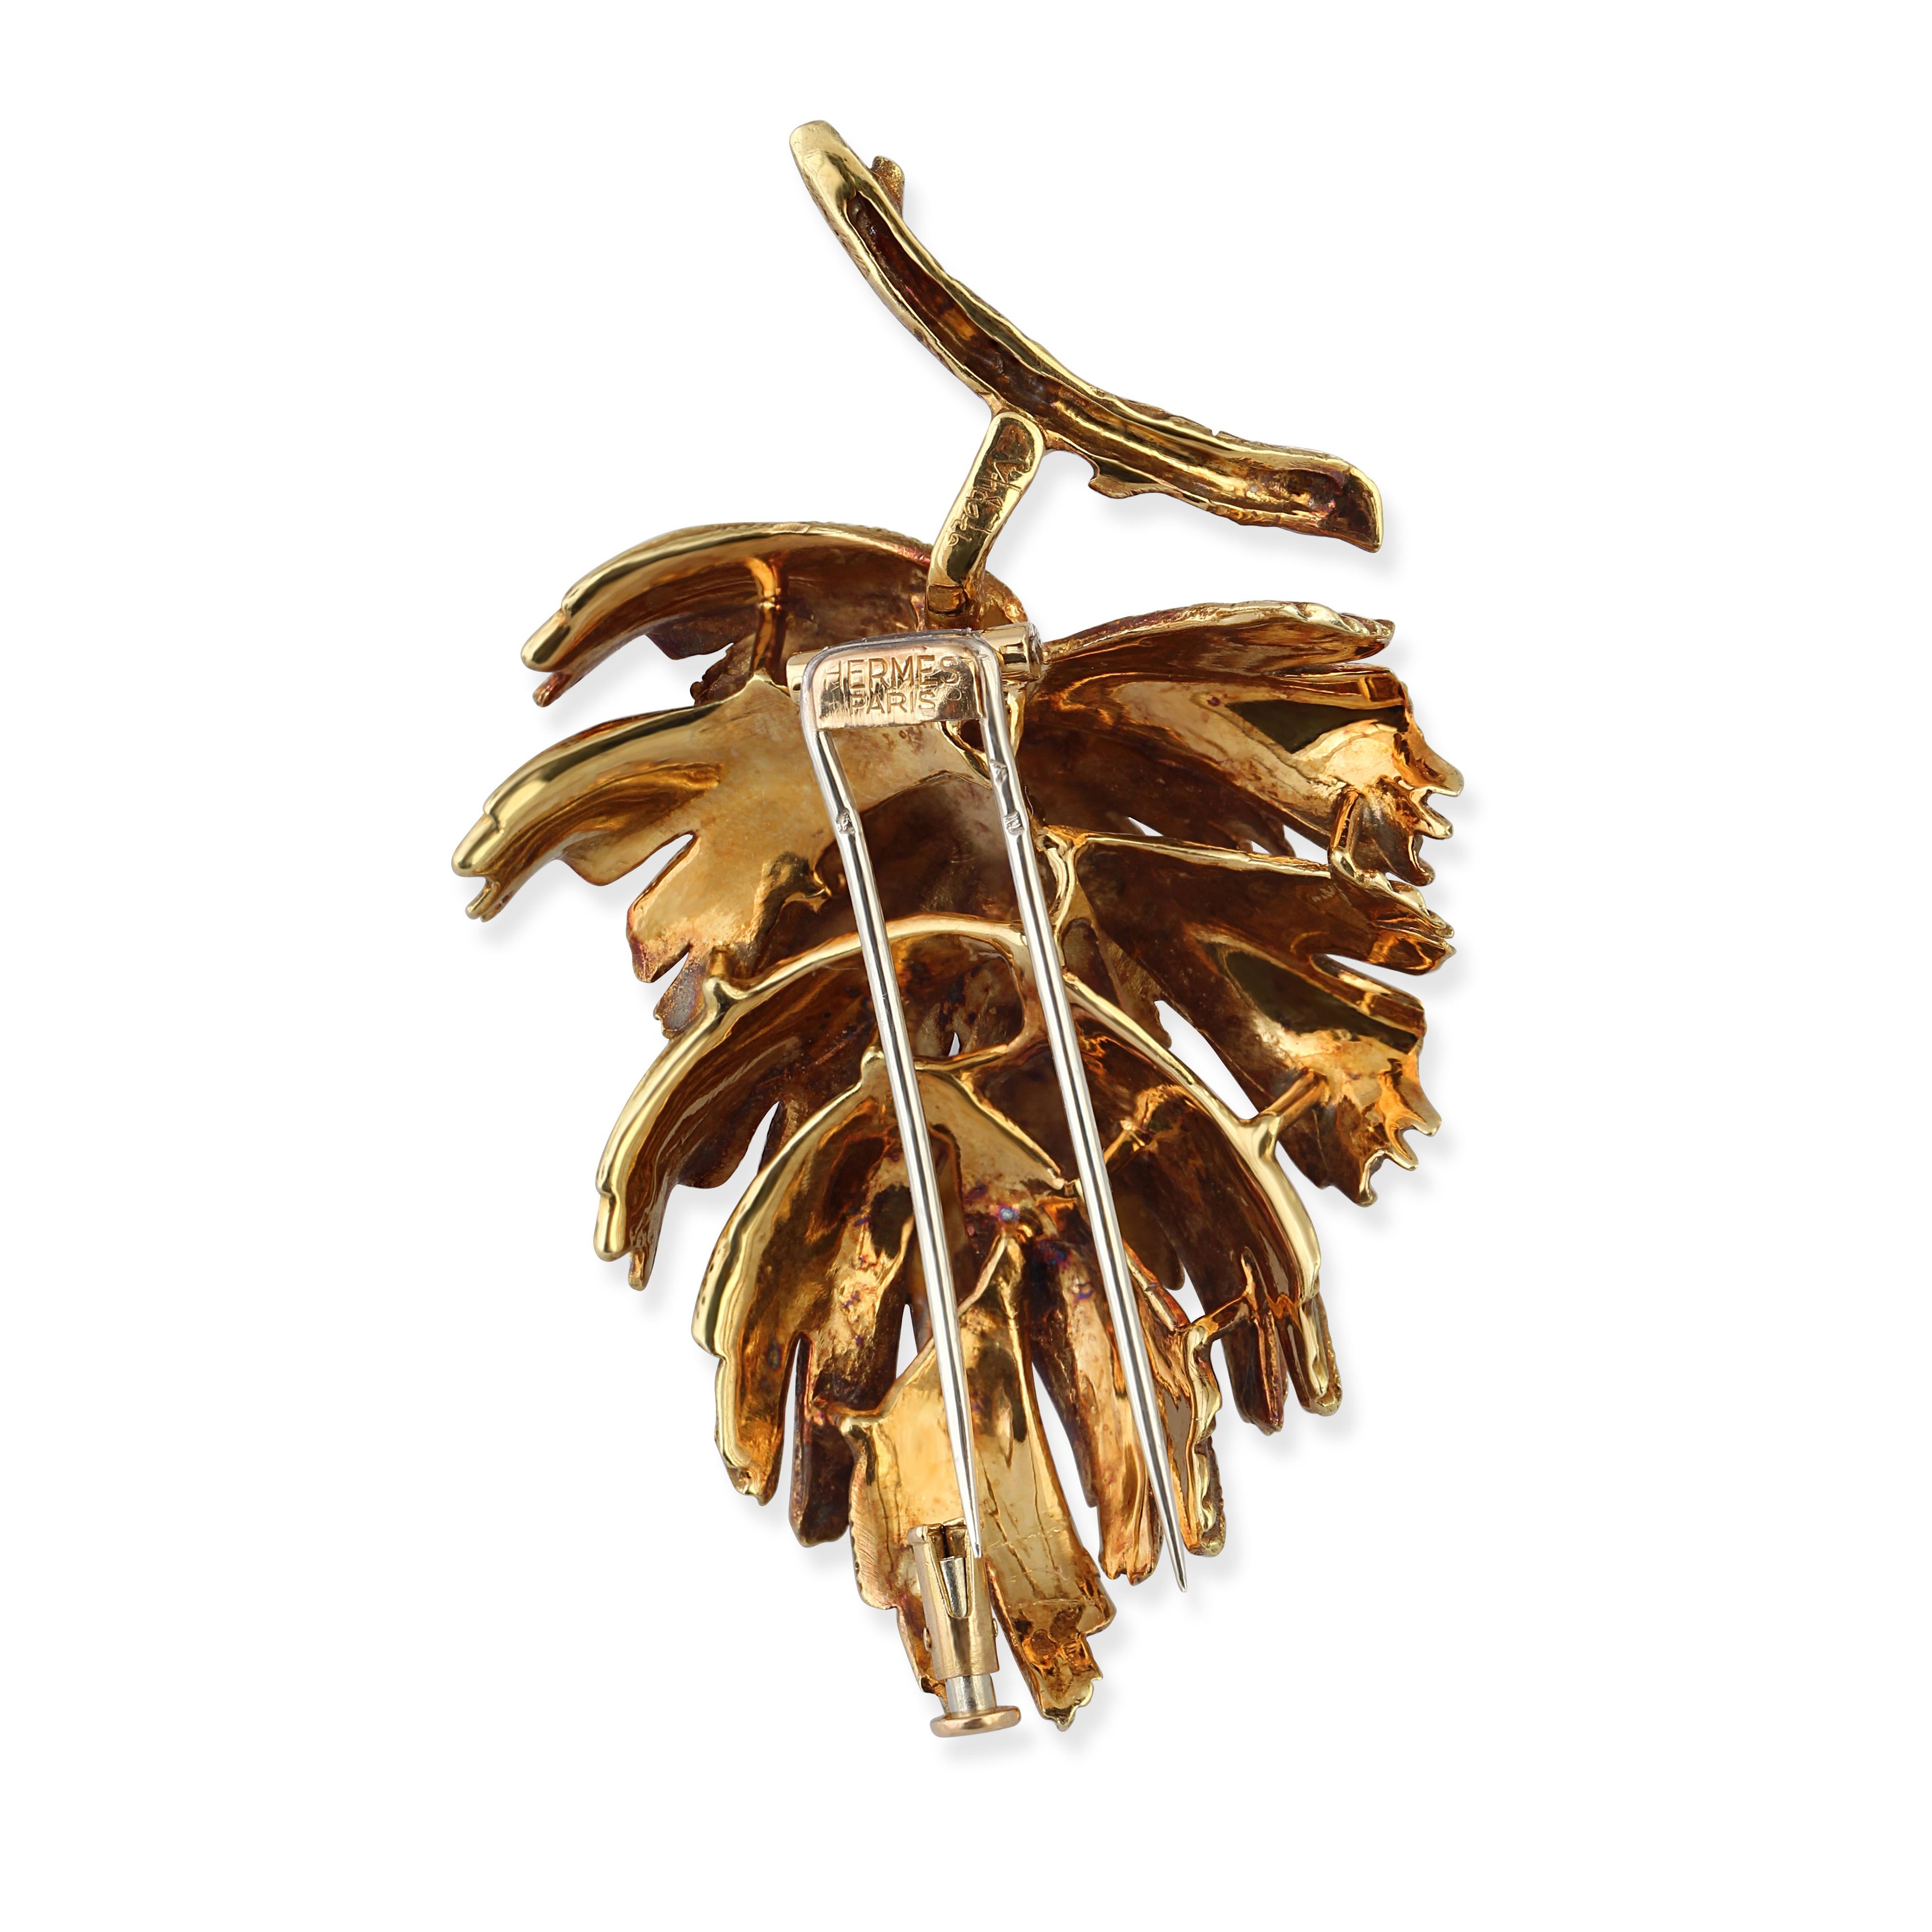 Broche en feuille d'or 18 carats par Hermes

Longueur : 5,5 cm
Poids : 26gr
Origine : Français
